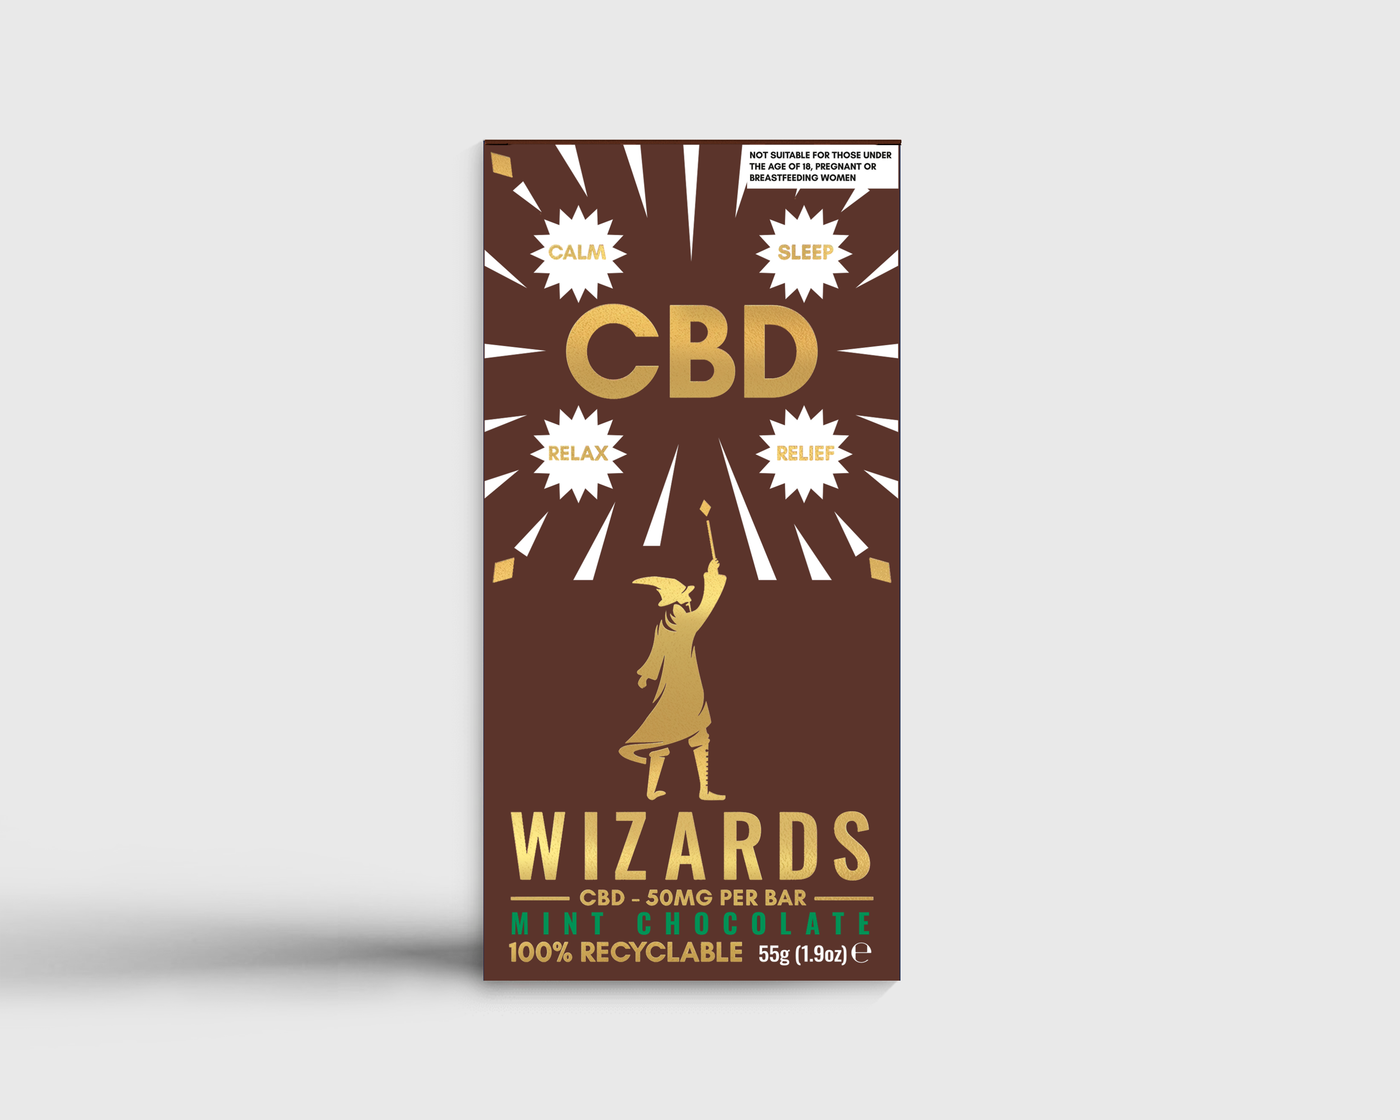 The Wizards CBD Chocolate